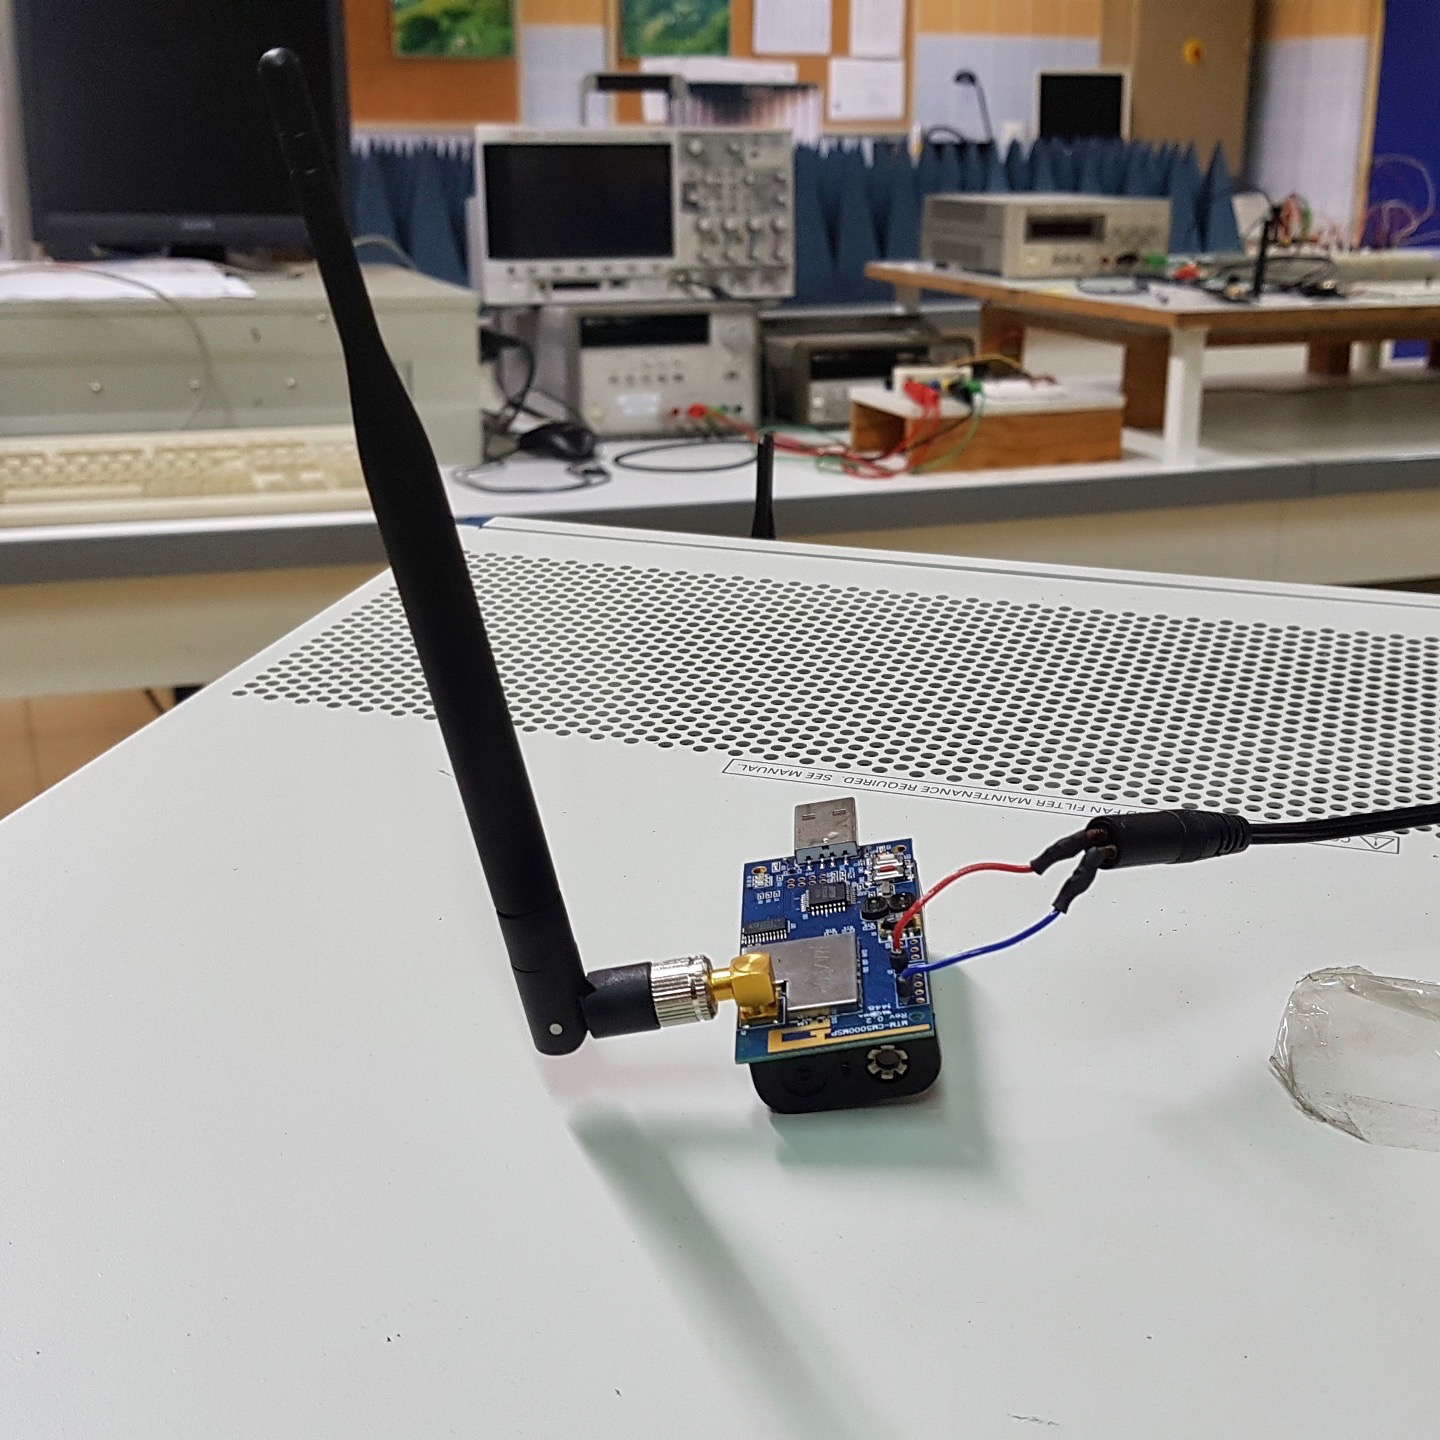 ▶️ Wifi, 4G, Bluetooth : Des scientifiques de l’université parviennent à cartographier des ondes électromagnétiques